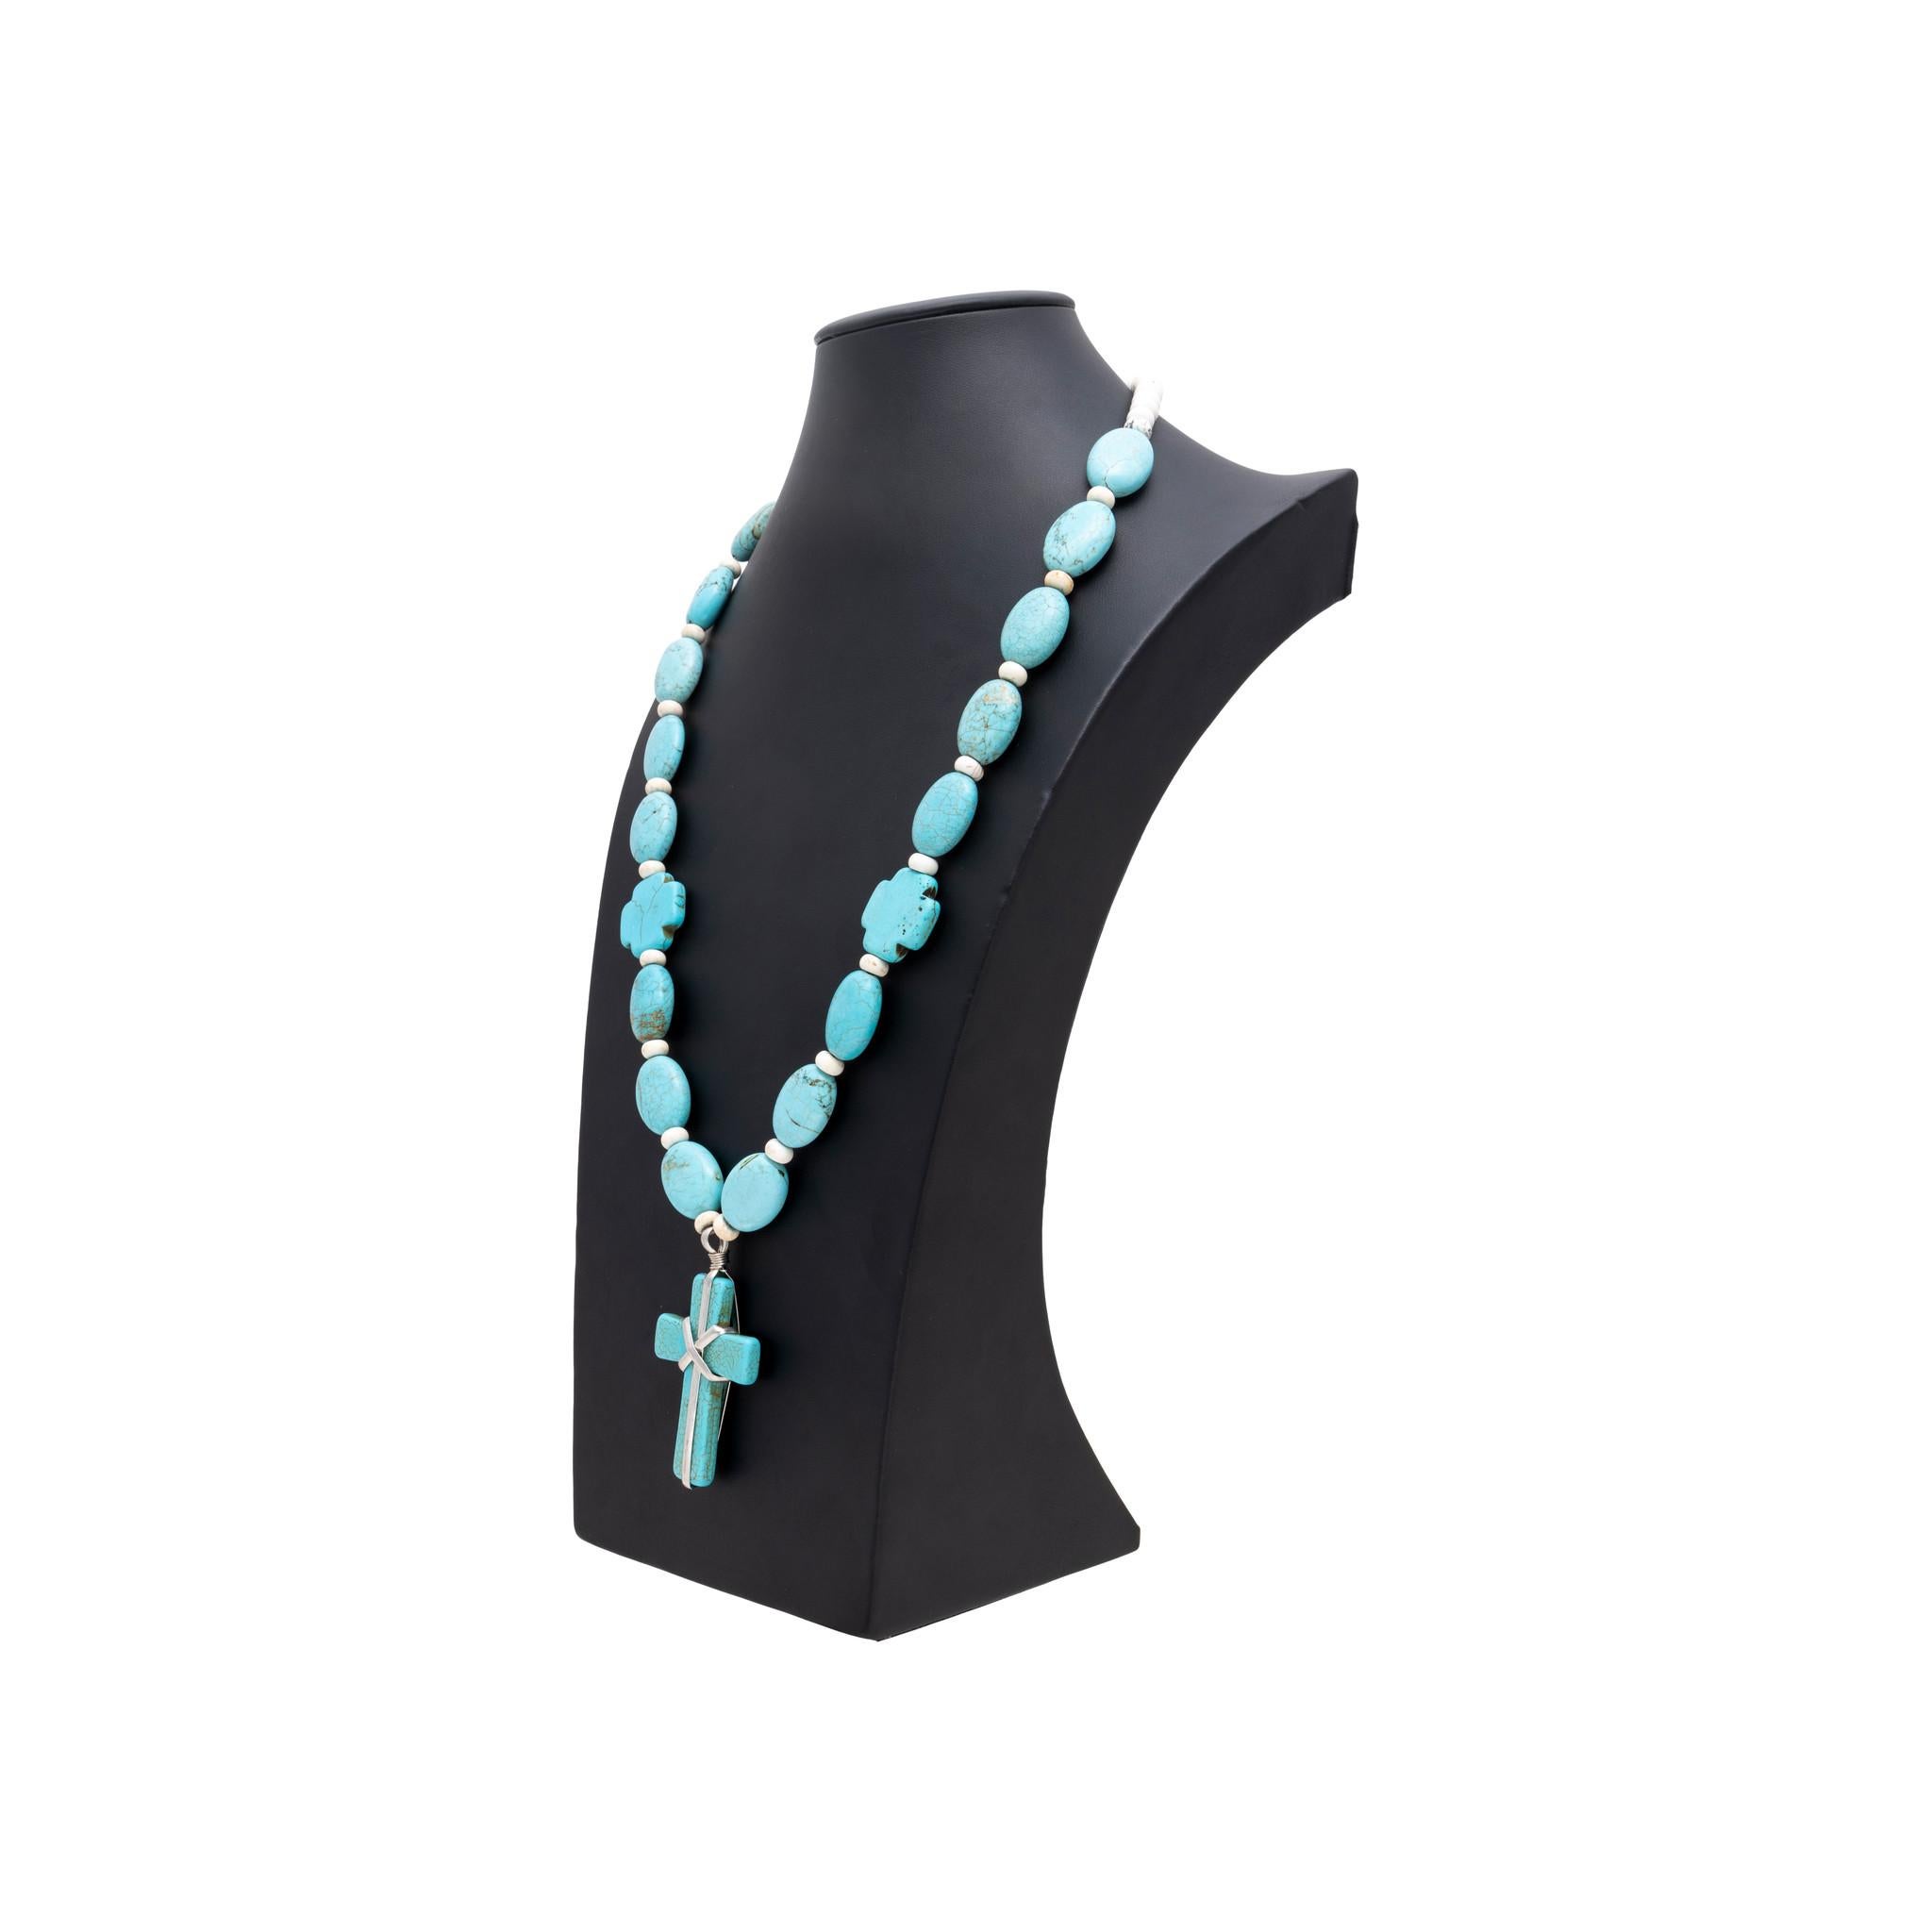 Collier en perles de turquoise de l'Indien Nacajo. Un grand pendentif en forme de croix est attaché à une chaîne en perles. Les perles sont également en turquoise et de forme oblongue. Chaque perle turquoise est entrecoupée de petites perles